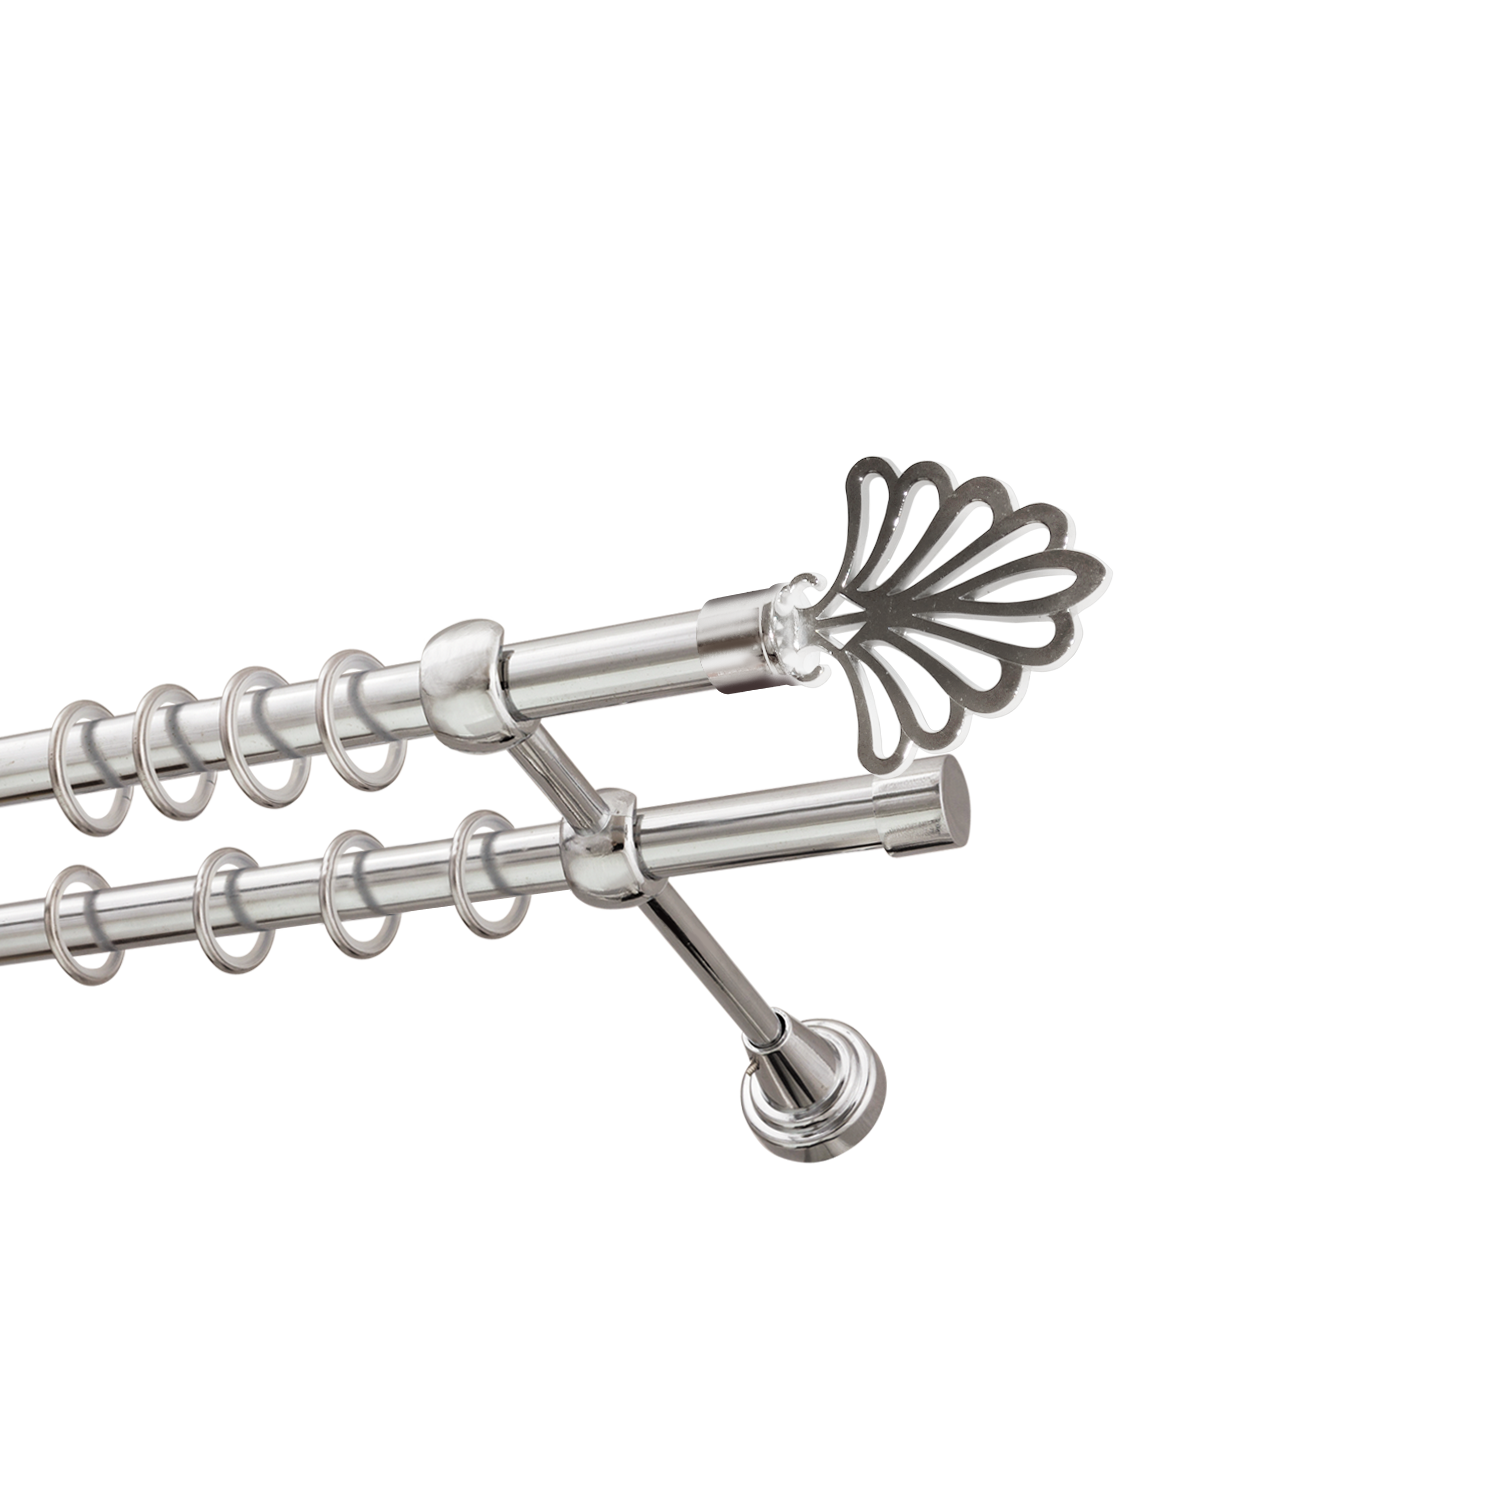 Металлический карниз для штор Бутик, двухрядный 16/16 мм, серебро, гладкая штанга, длина 200 см - фото Wikidecor.ru